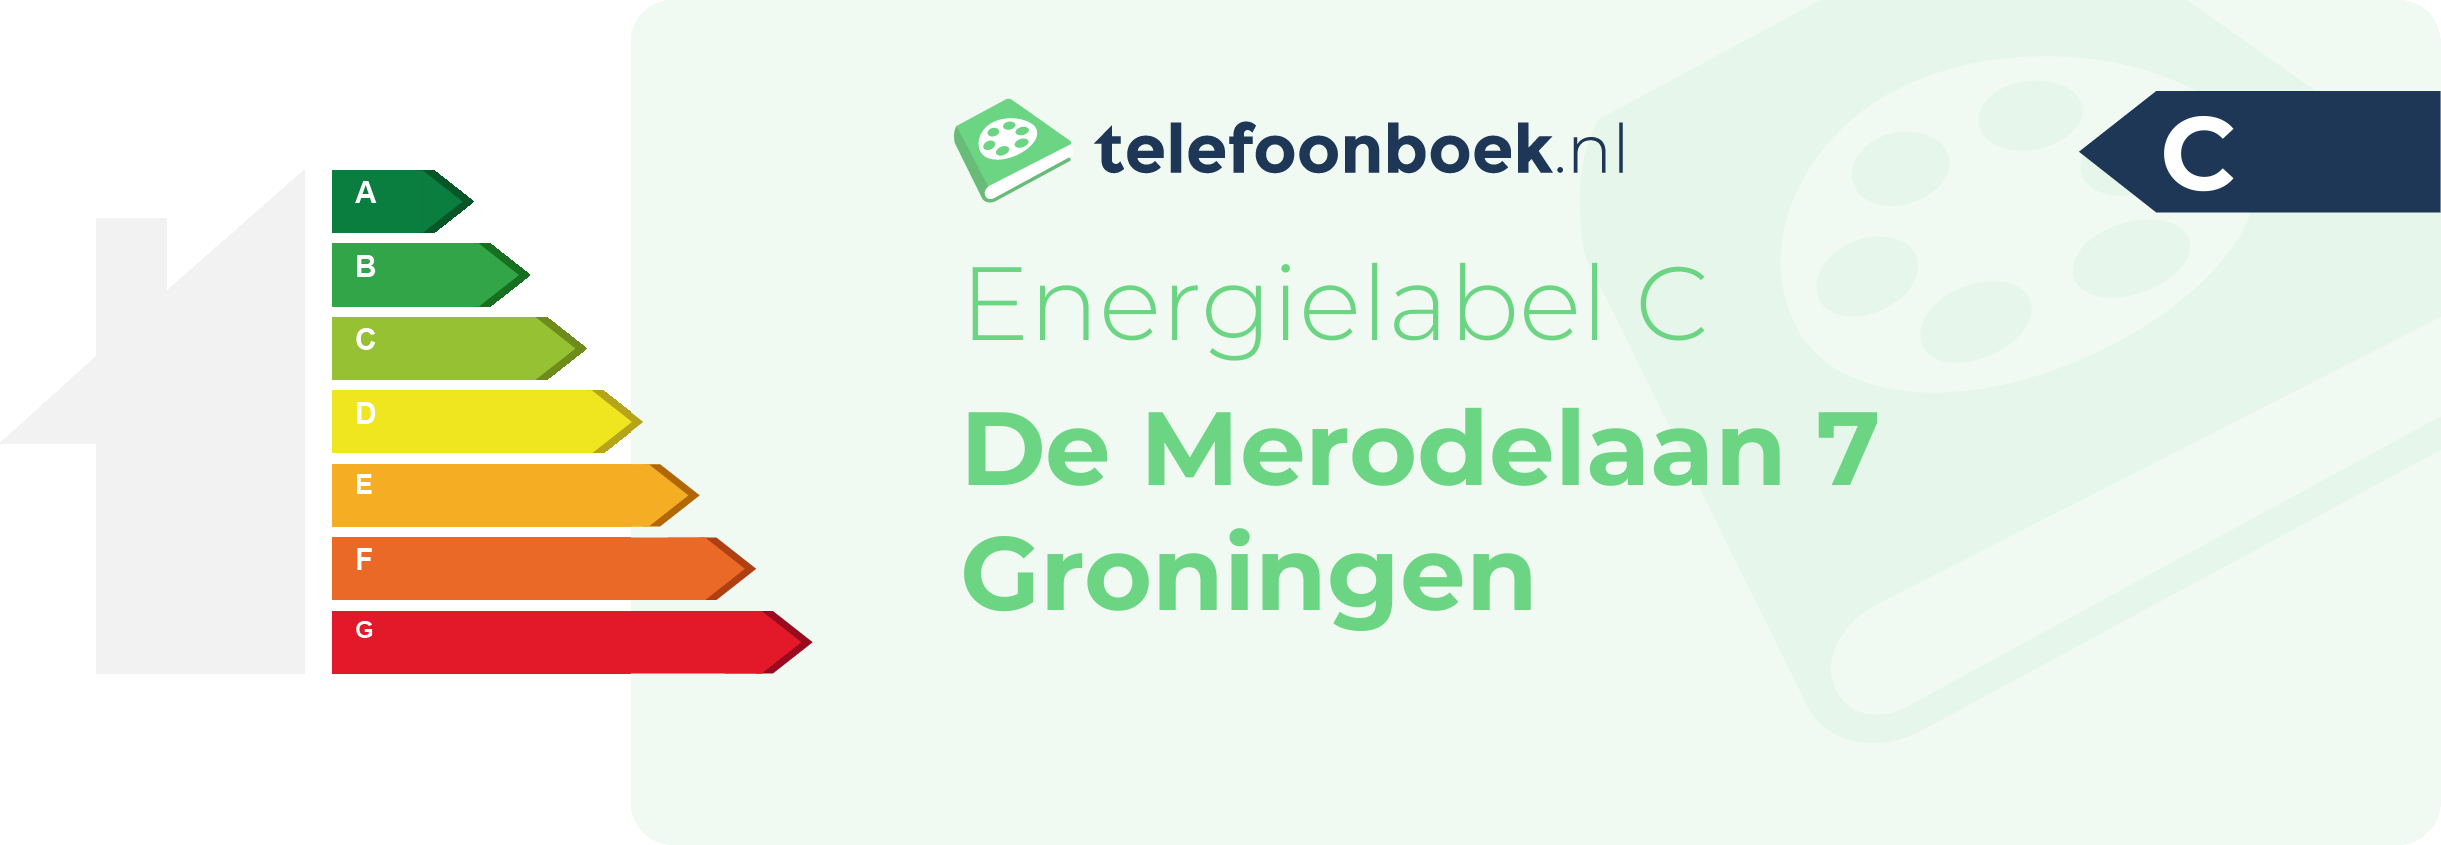 Energielabel De Merodelaan 7 Groningen